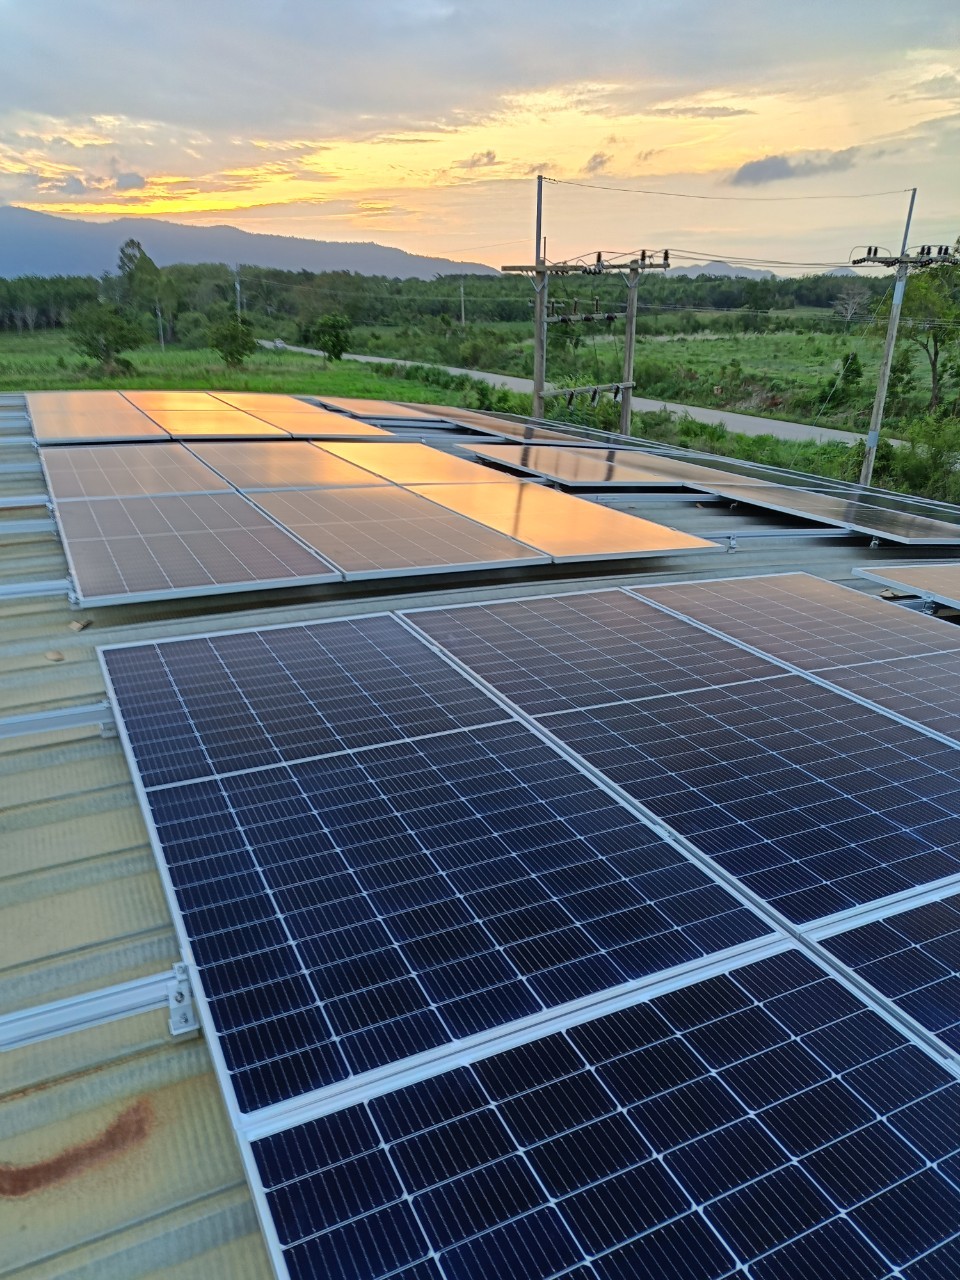 ระบบ Solar Rooftop ทำงานไม่เต็มที่เกิดจากอะไร